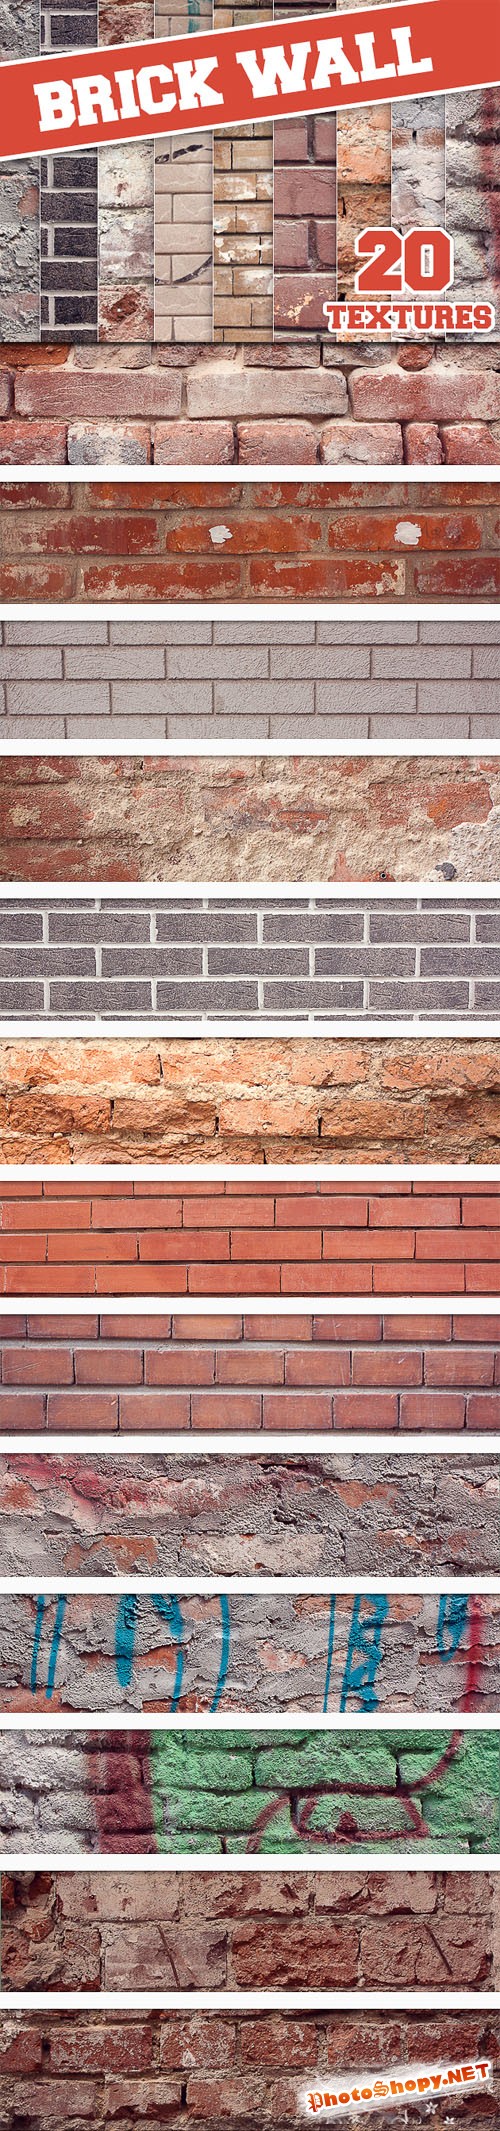 Designtnt - Brick Wall Textures